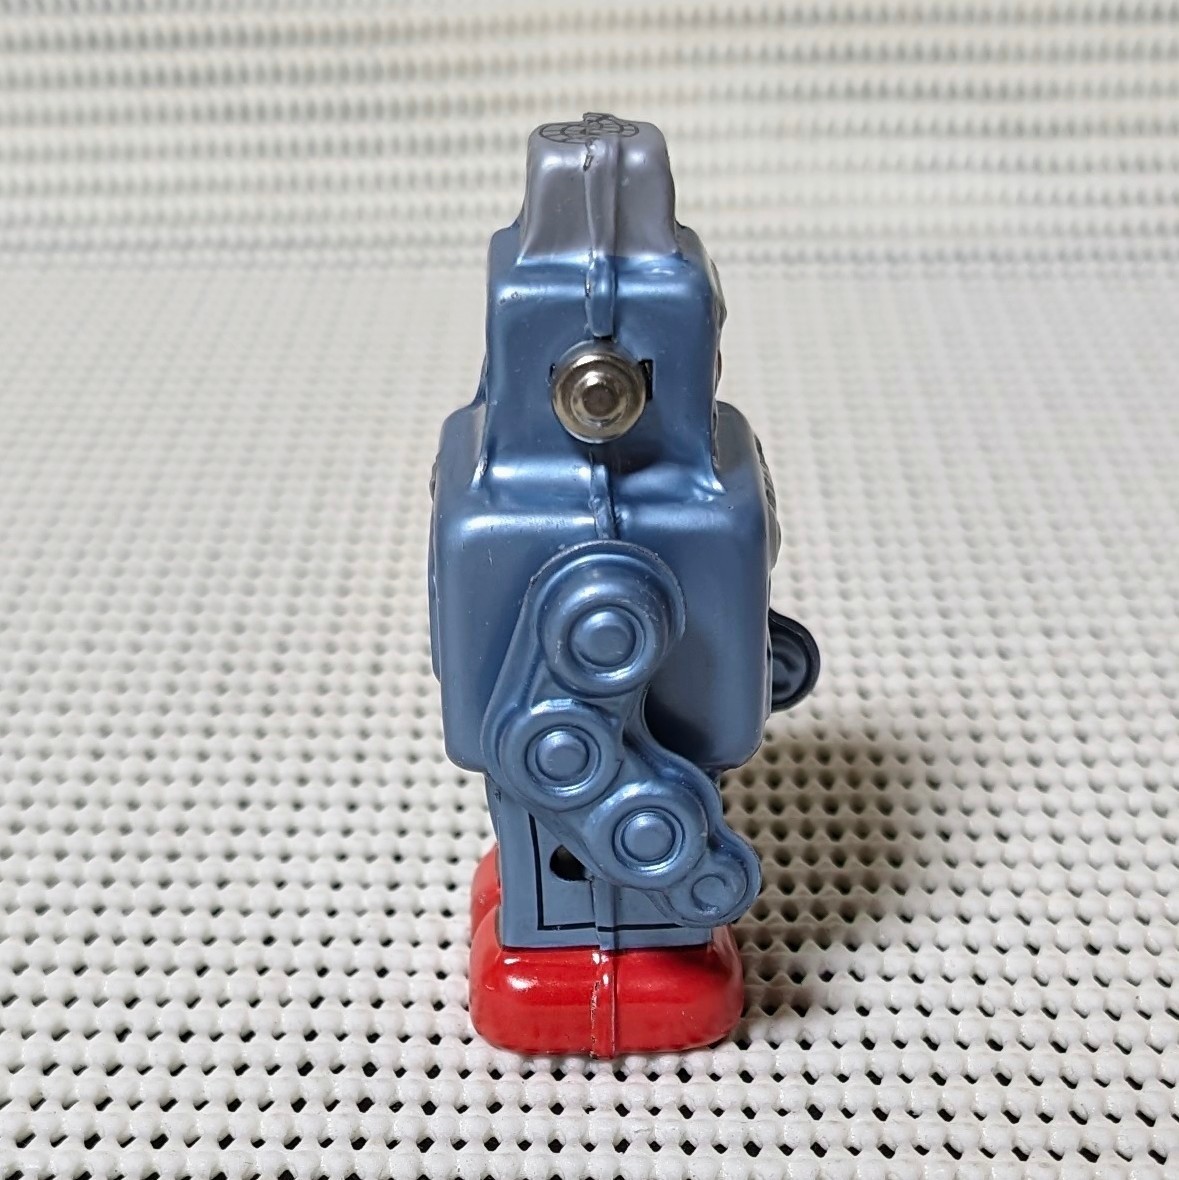 美品　動作品　TINTOY ROBOT WIND-UP 日本製 ブリキ おもちゃ ゼンマイ 歩行ロボット 箱付き 現状品